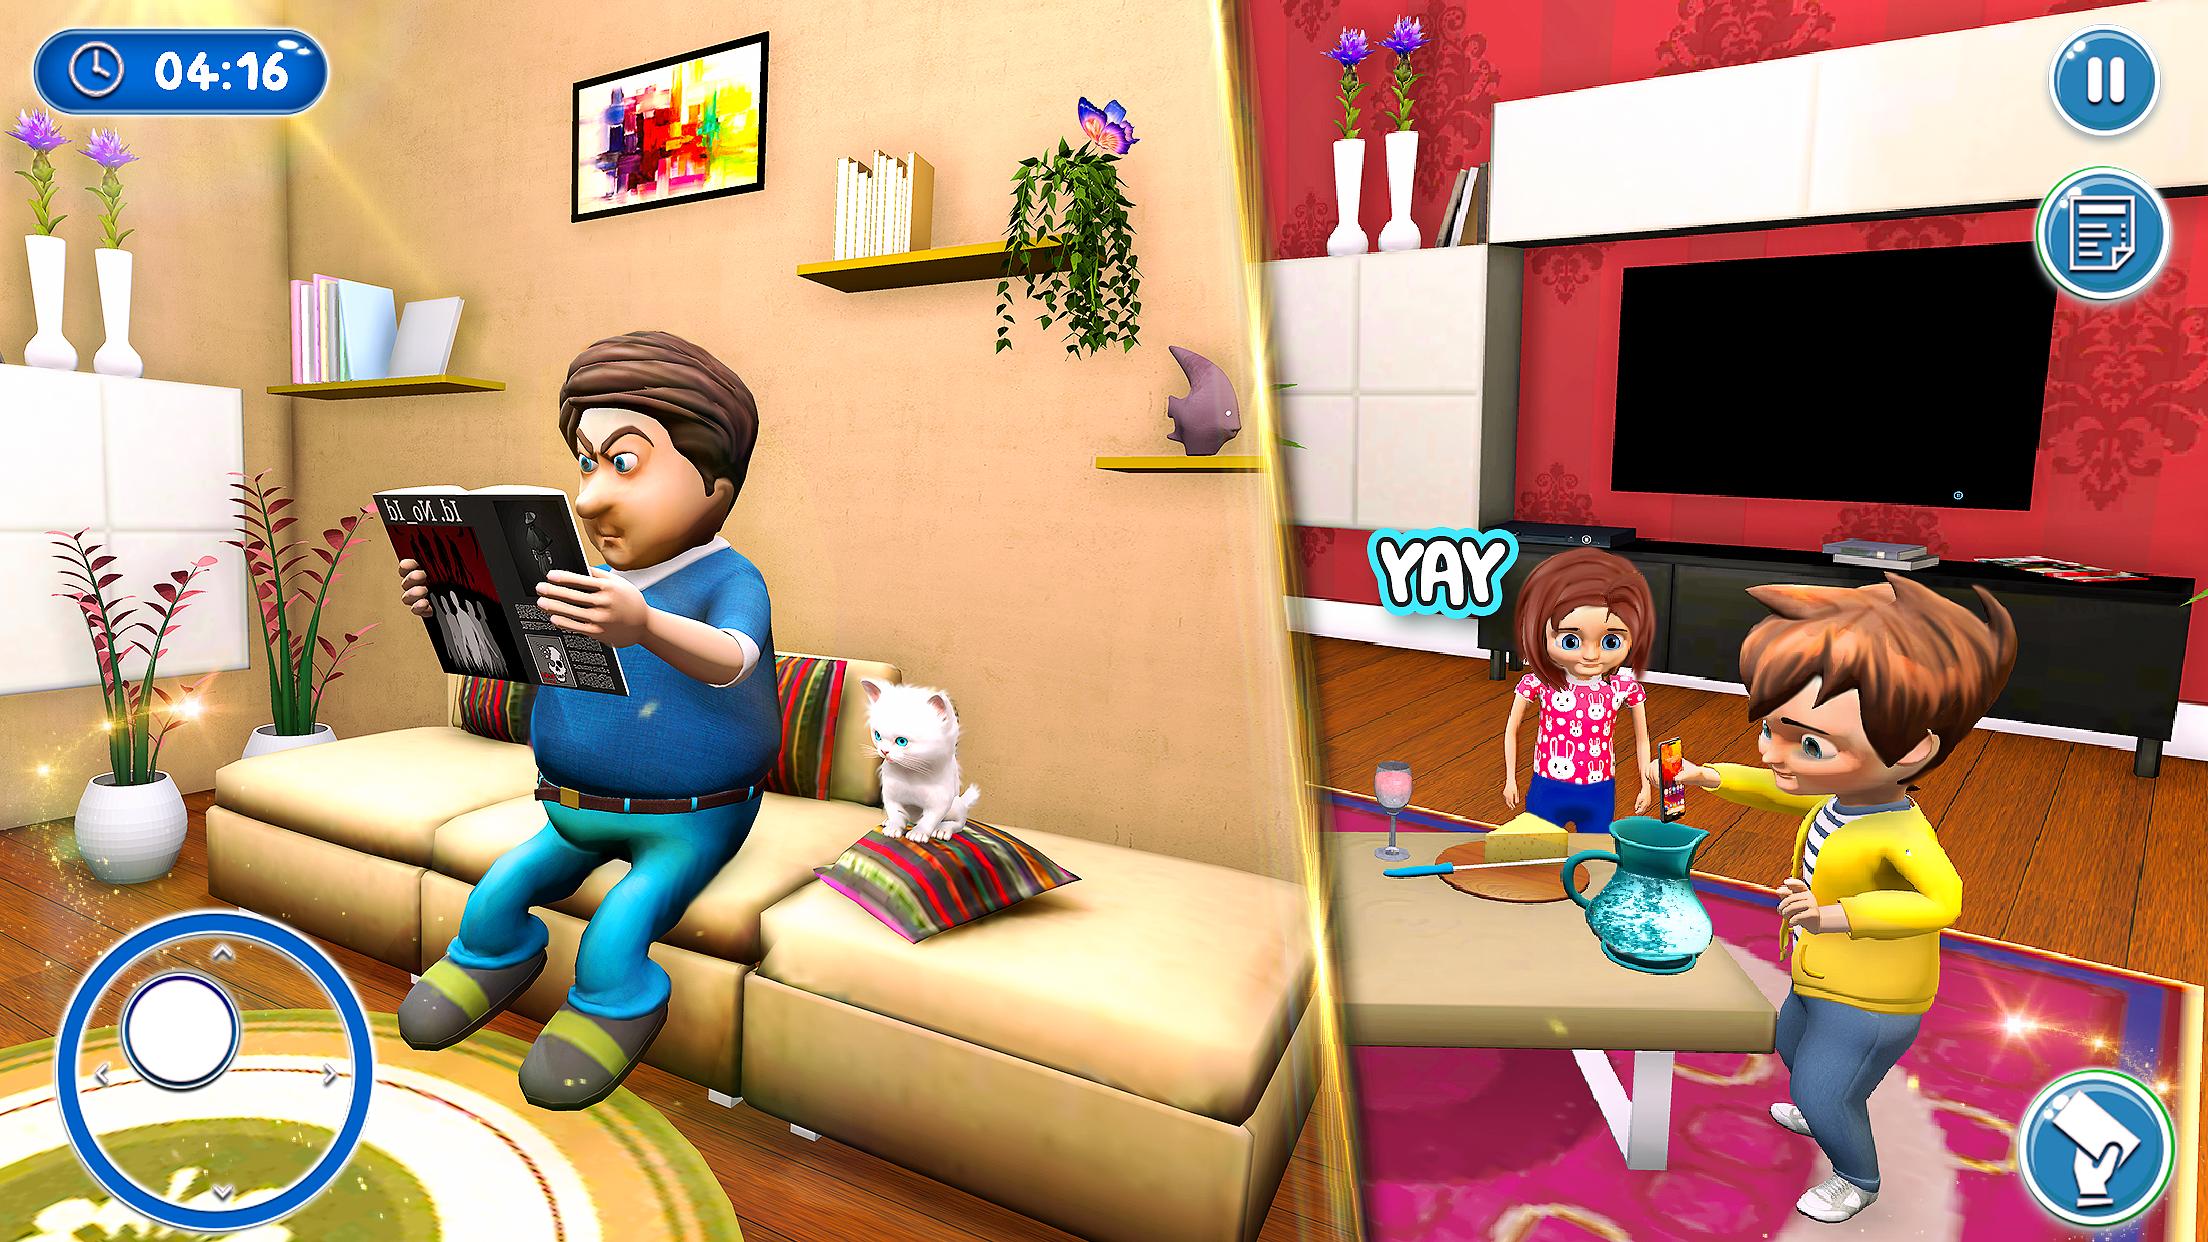 أبي في المنزل - ألعاب الأسرة السعيدة for Android - APK Download